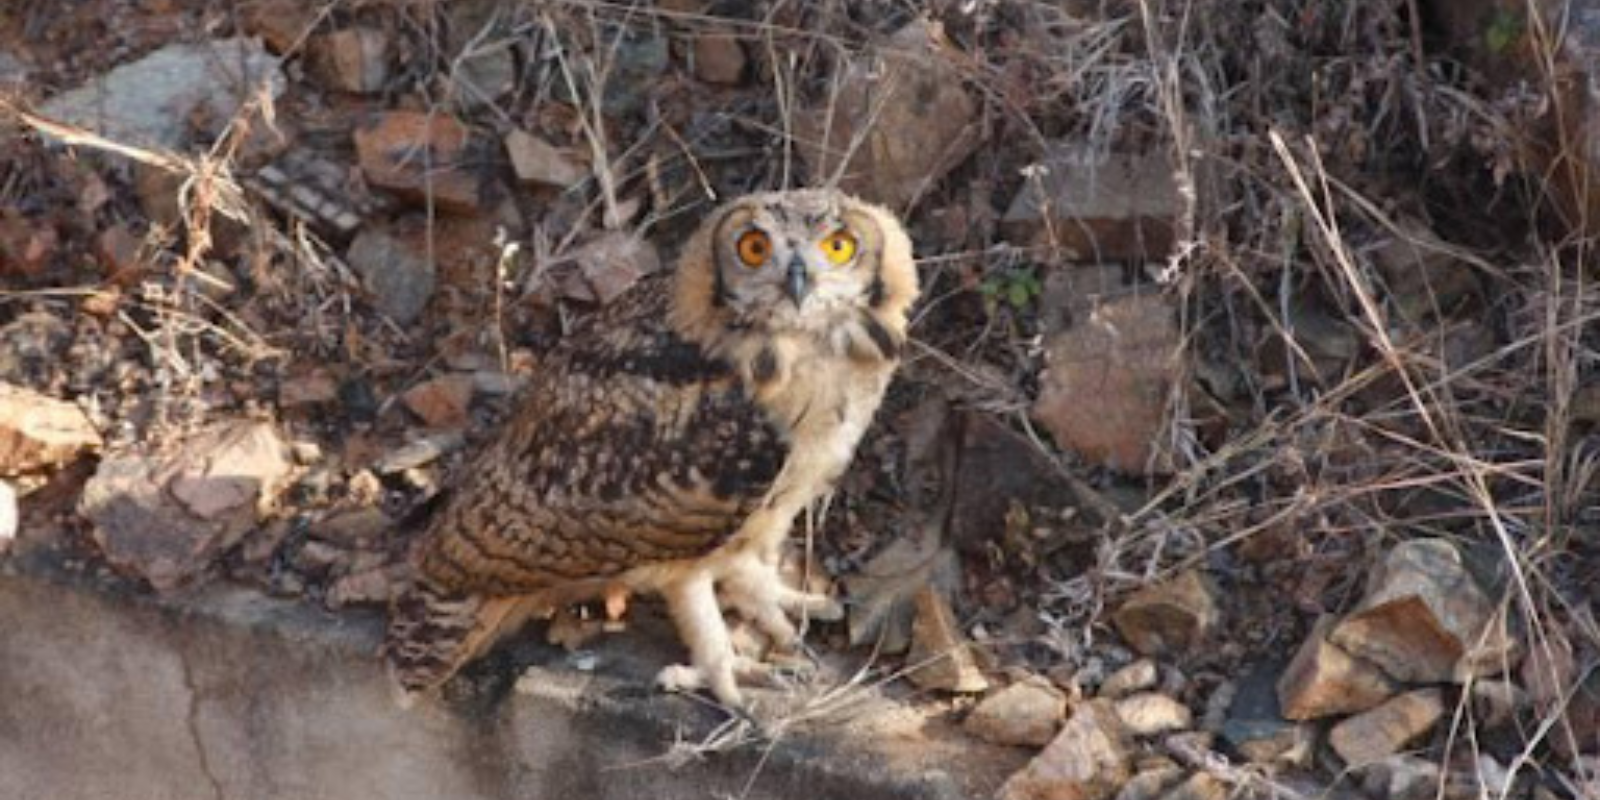 Juvenile Indian Eagle Owl